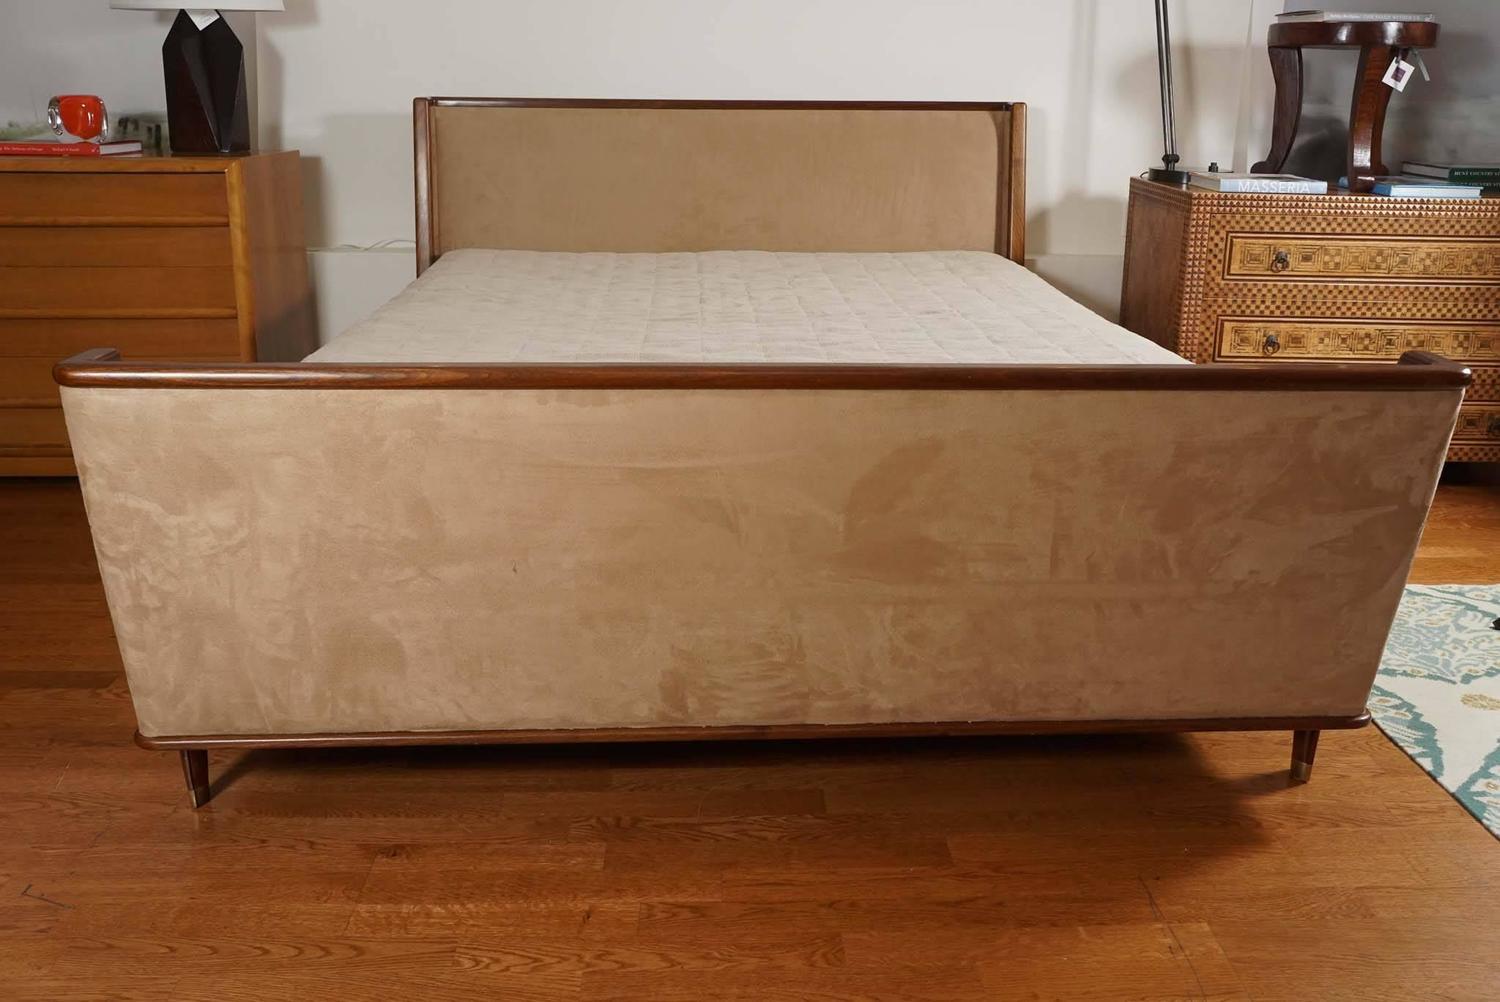 Le lit Martine en bois et tapissé, présenté ici, fait partie de la collection foley&cox HOME. S'inspirant d'une trouvaille de marché des années 1940 en France, le lit est doté d'une tête de lit incurvée et d'une enfilade avec des rails latéraux.